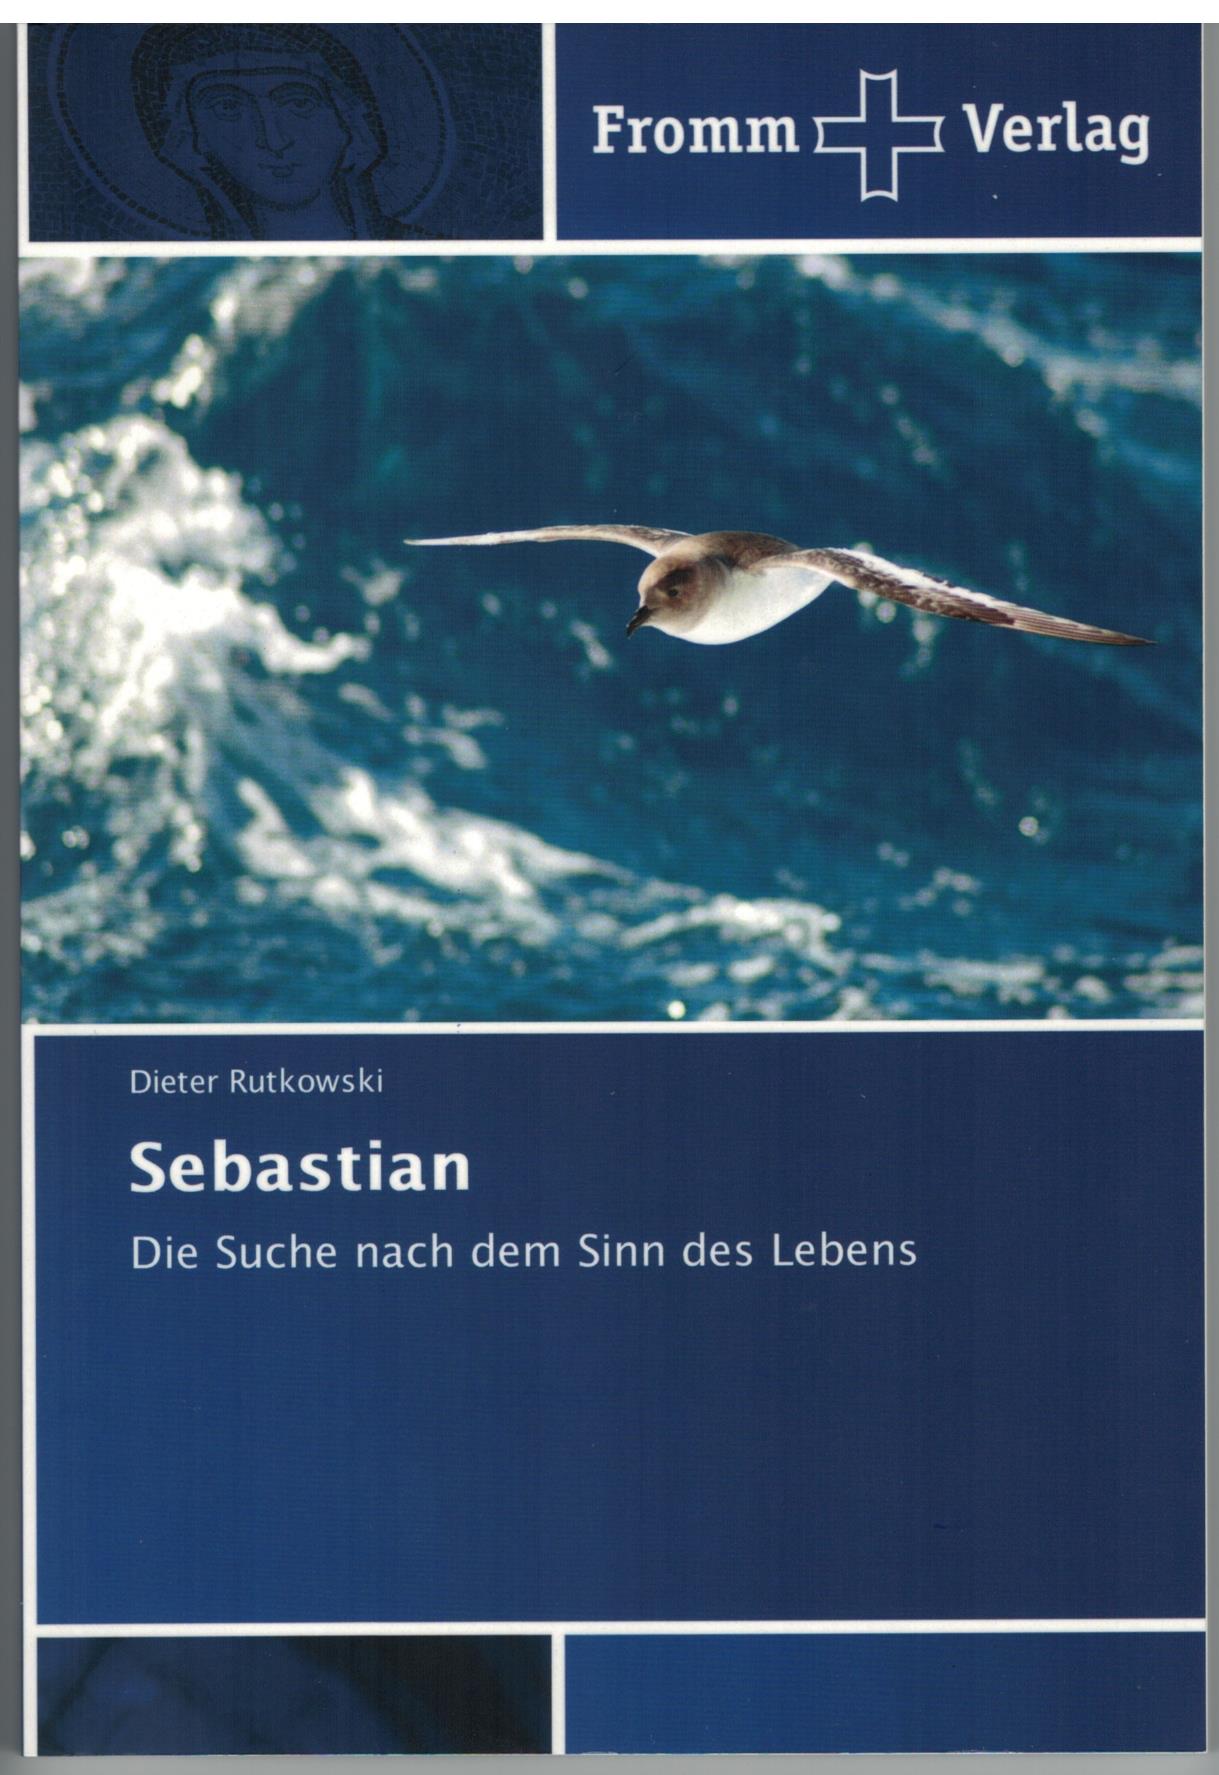 Sebastian - Fromm Verlag